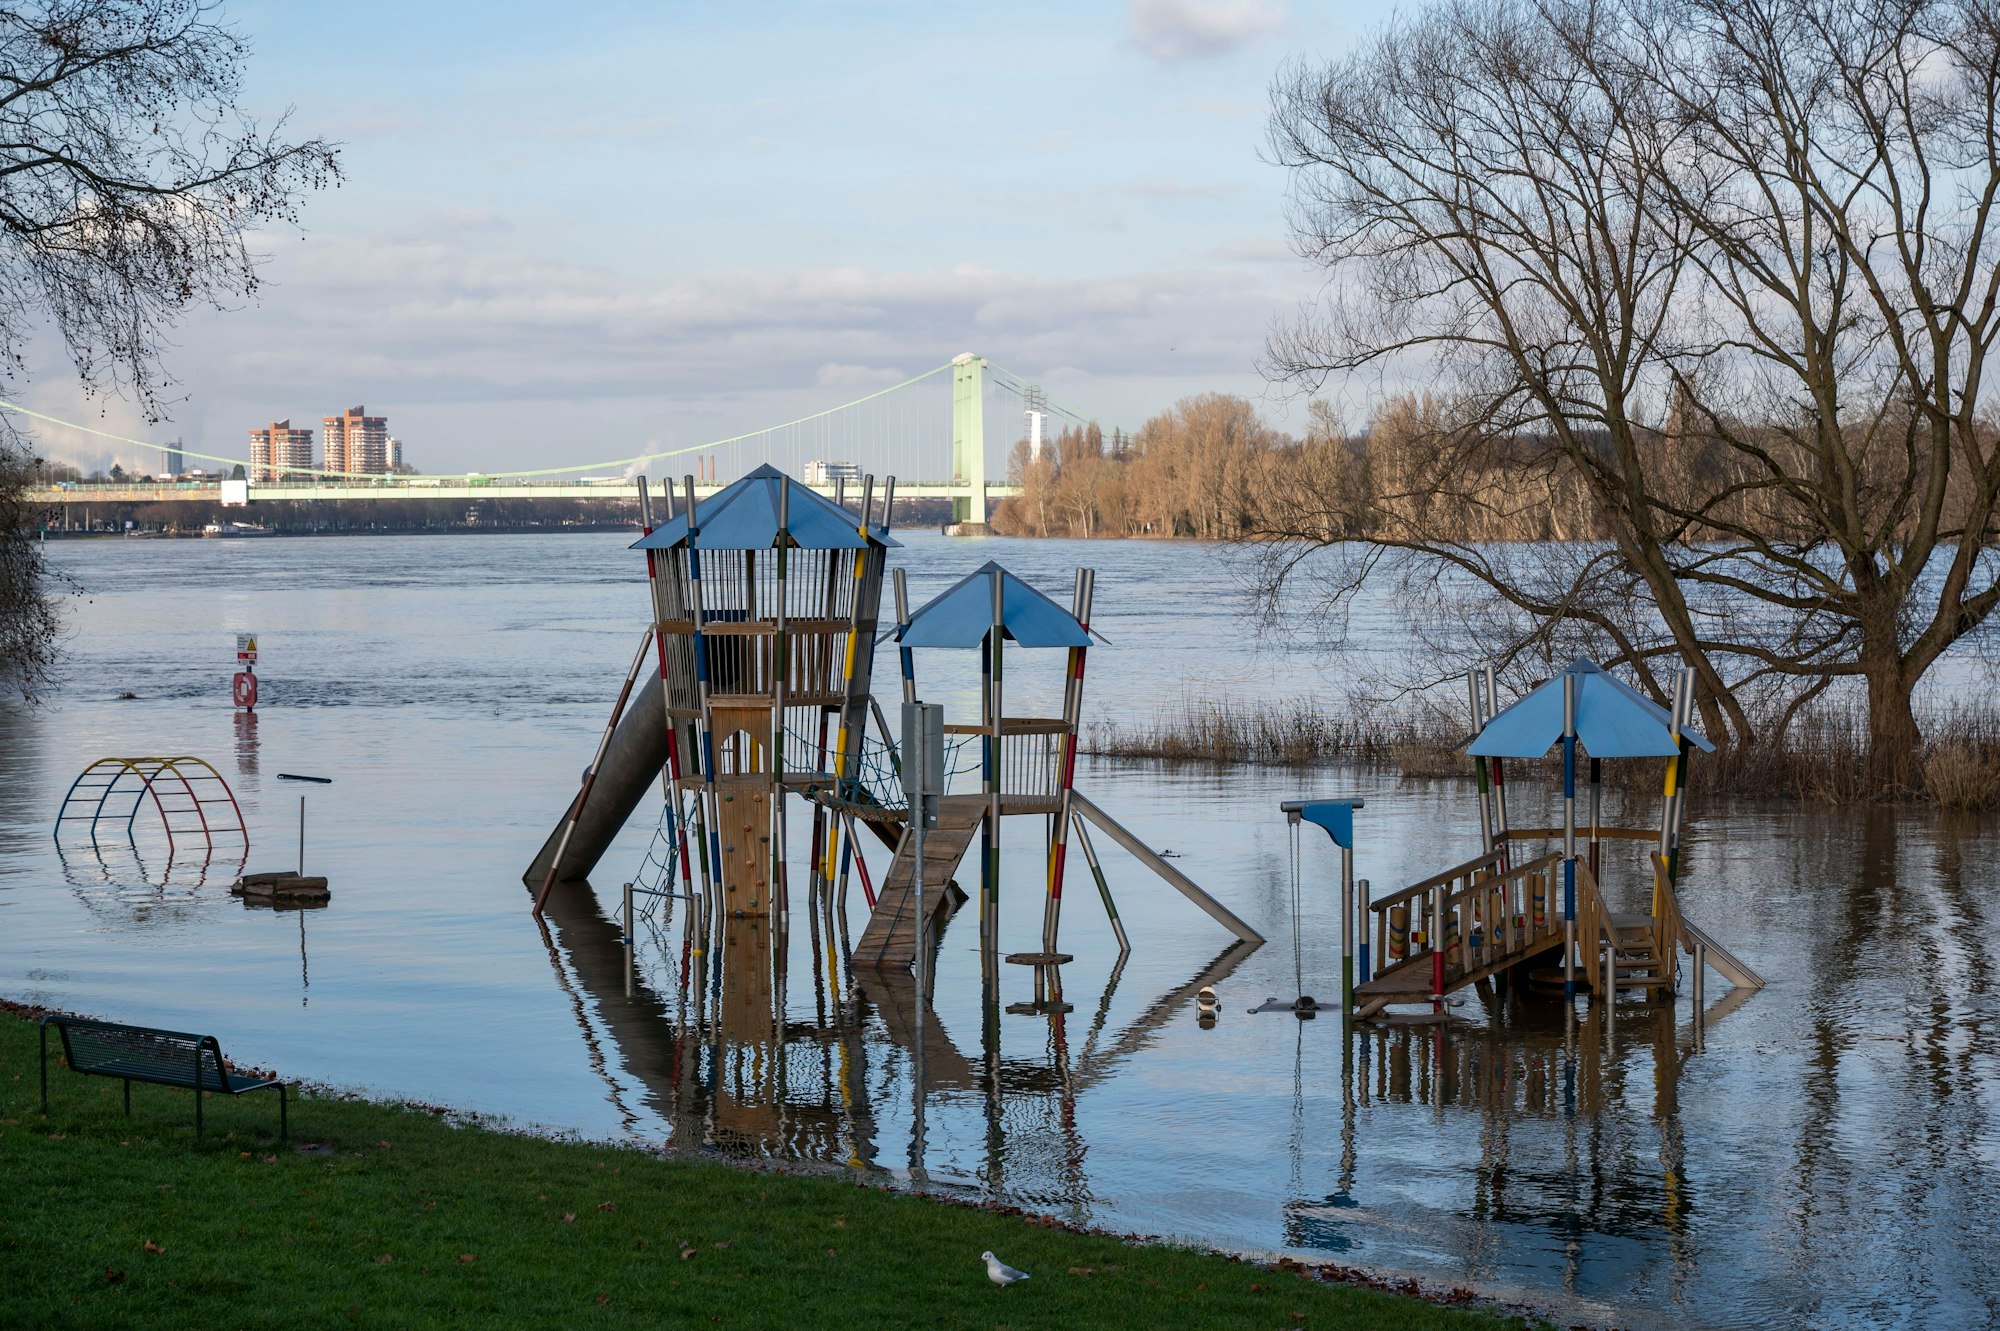 17.01.2023, Köln: Der Spielplatz am Rheinufer steht unter Wasser. Rheinhochwasser in Rodenkirchen, Kölner Pegel 6,4m. Foto: Uwe Weiser